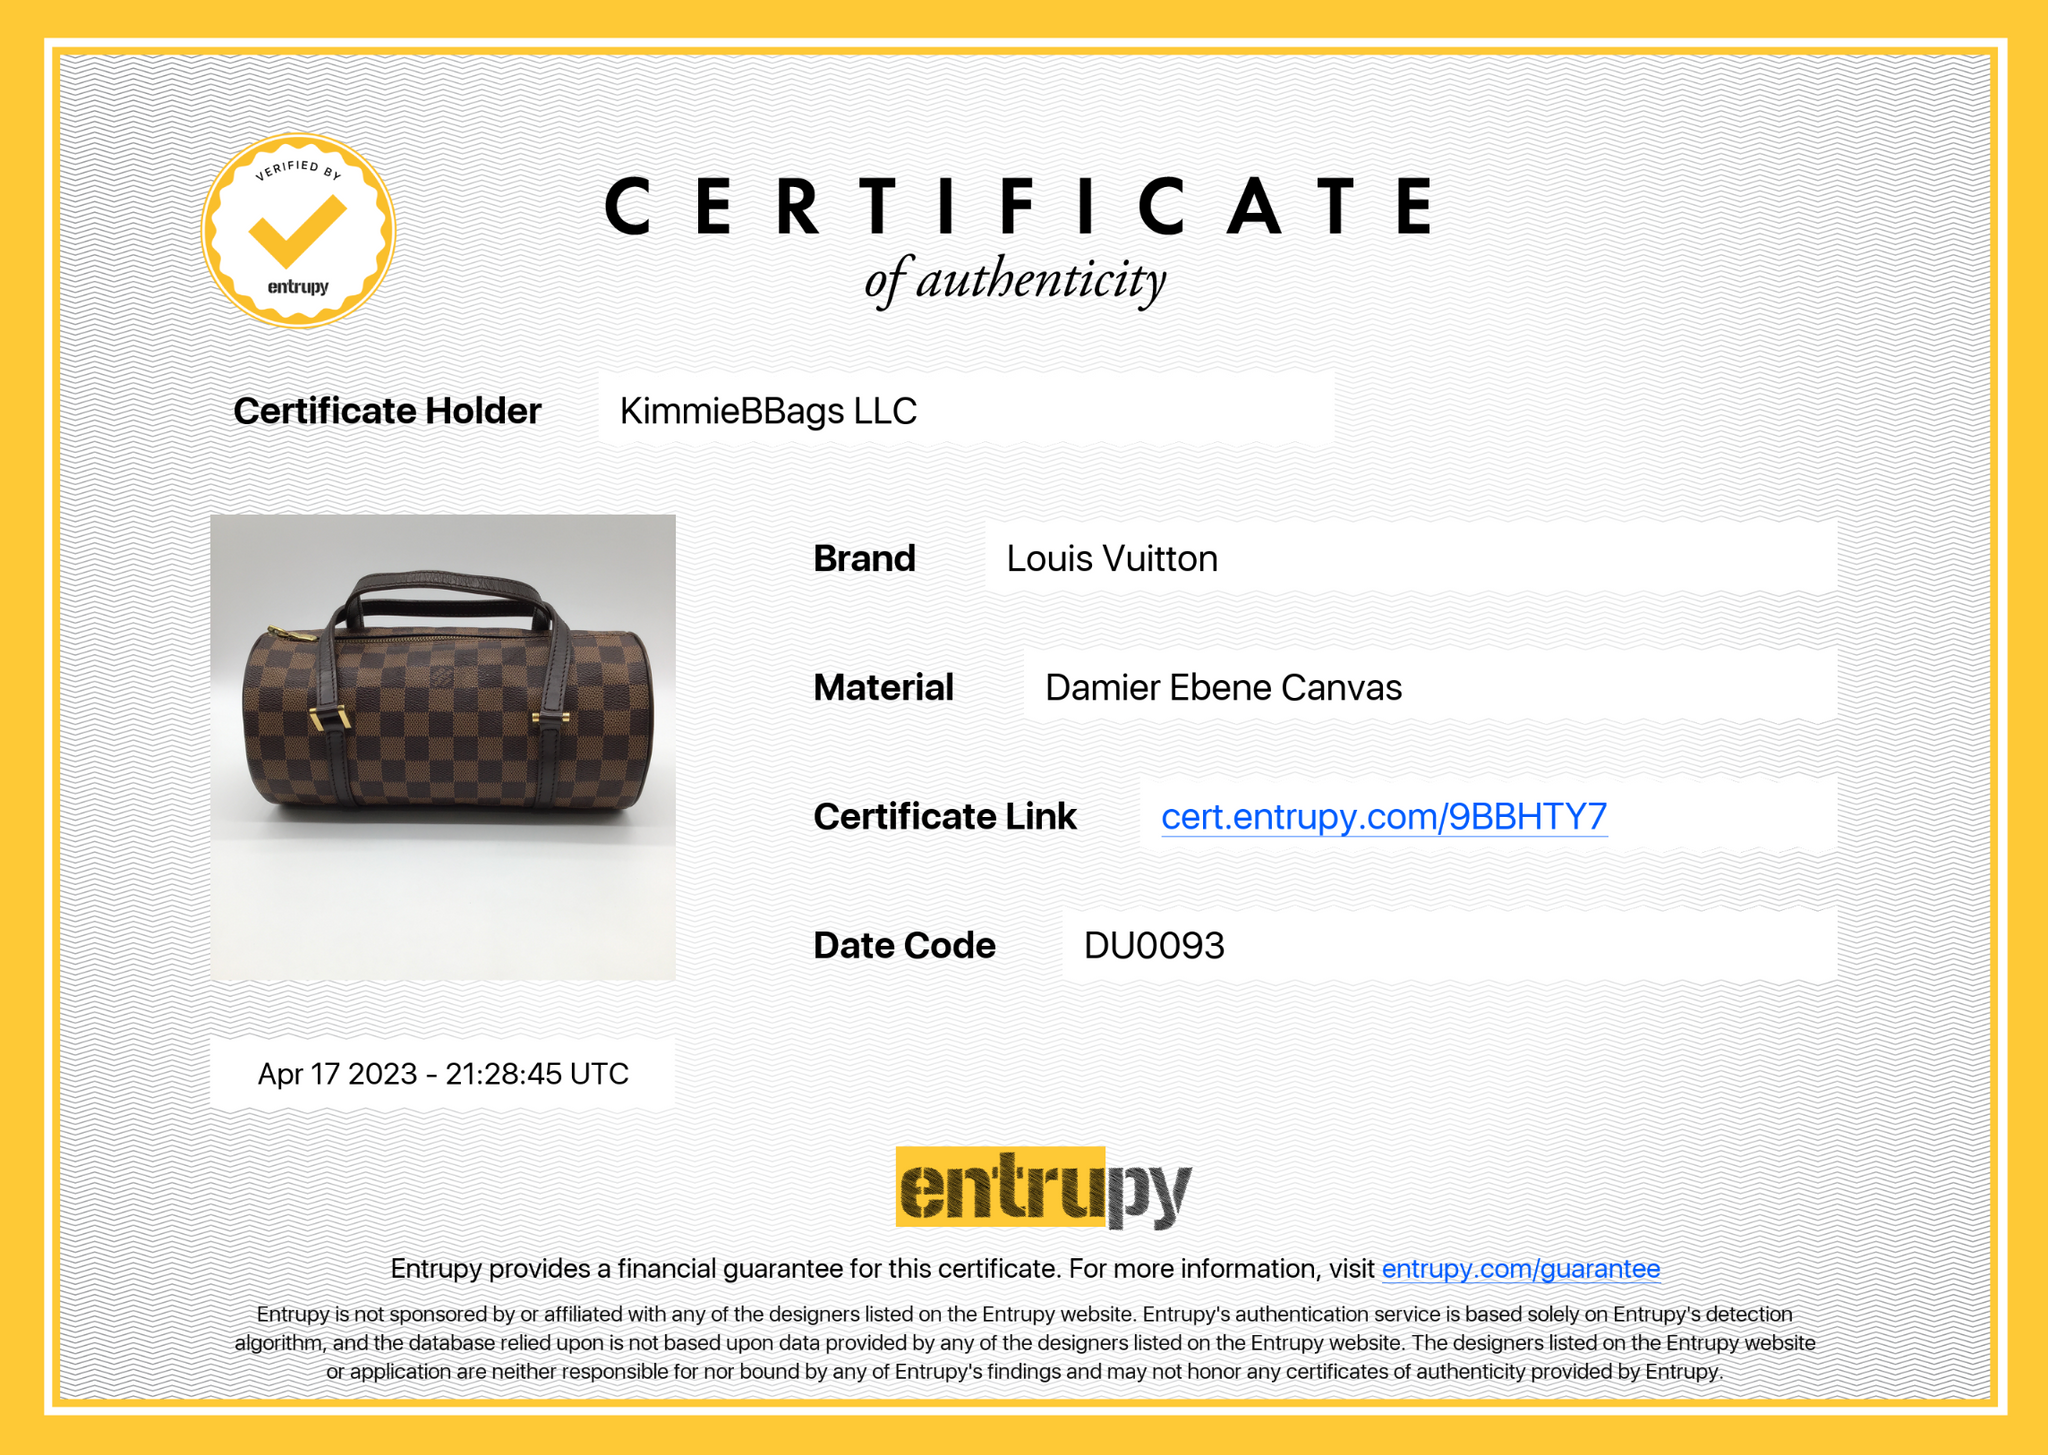 Brown Louis Vuitton Damier Ebene Papillon 28 Handbag